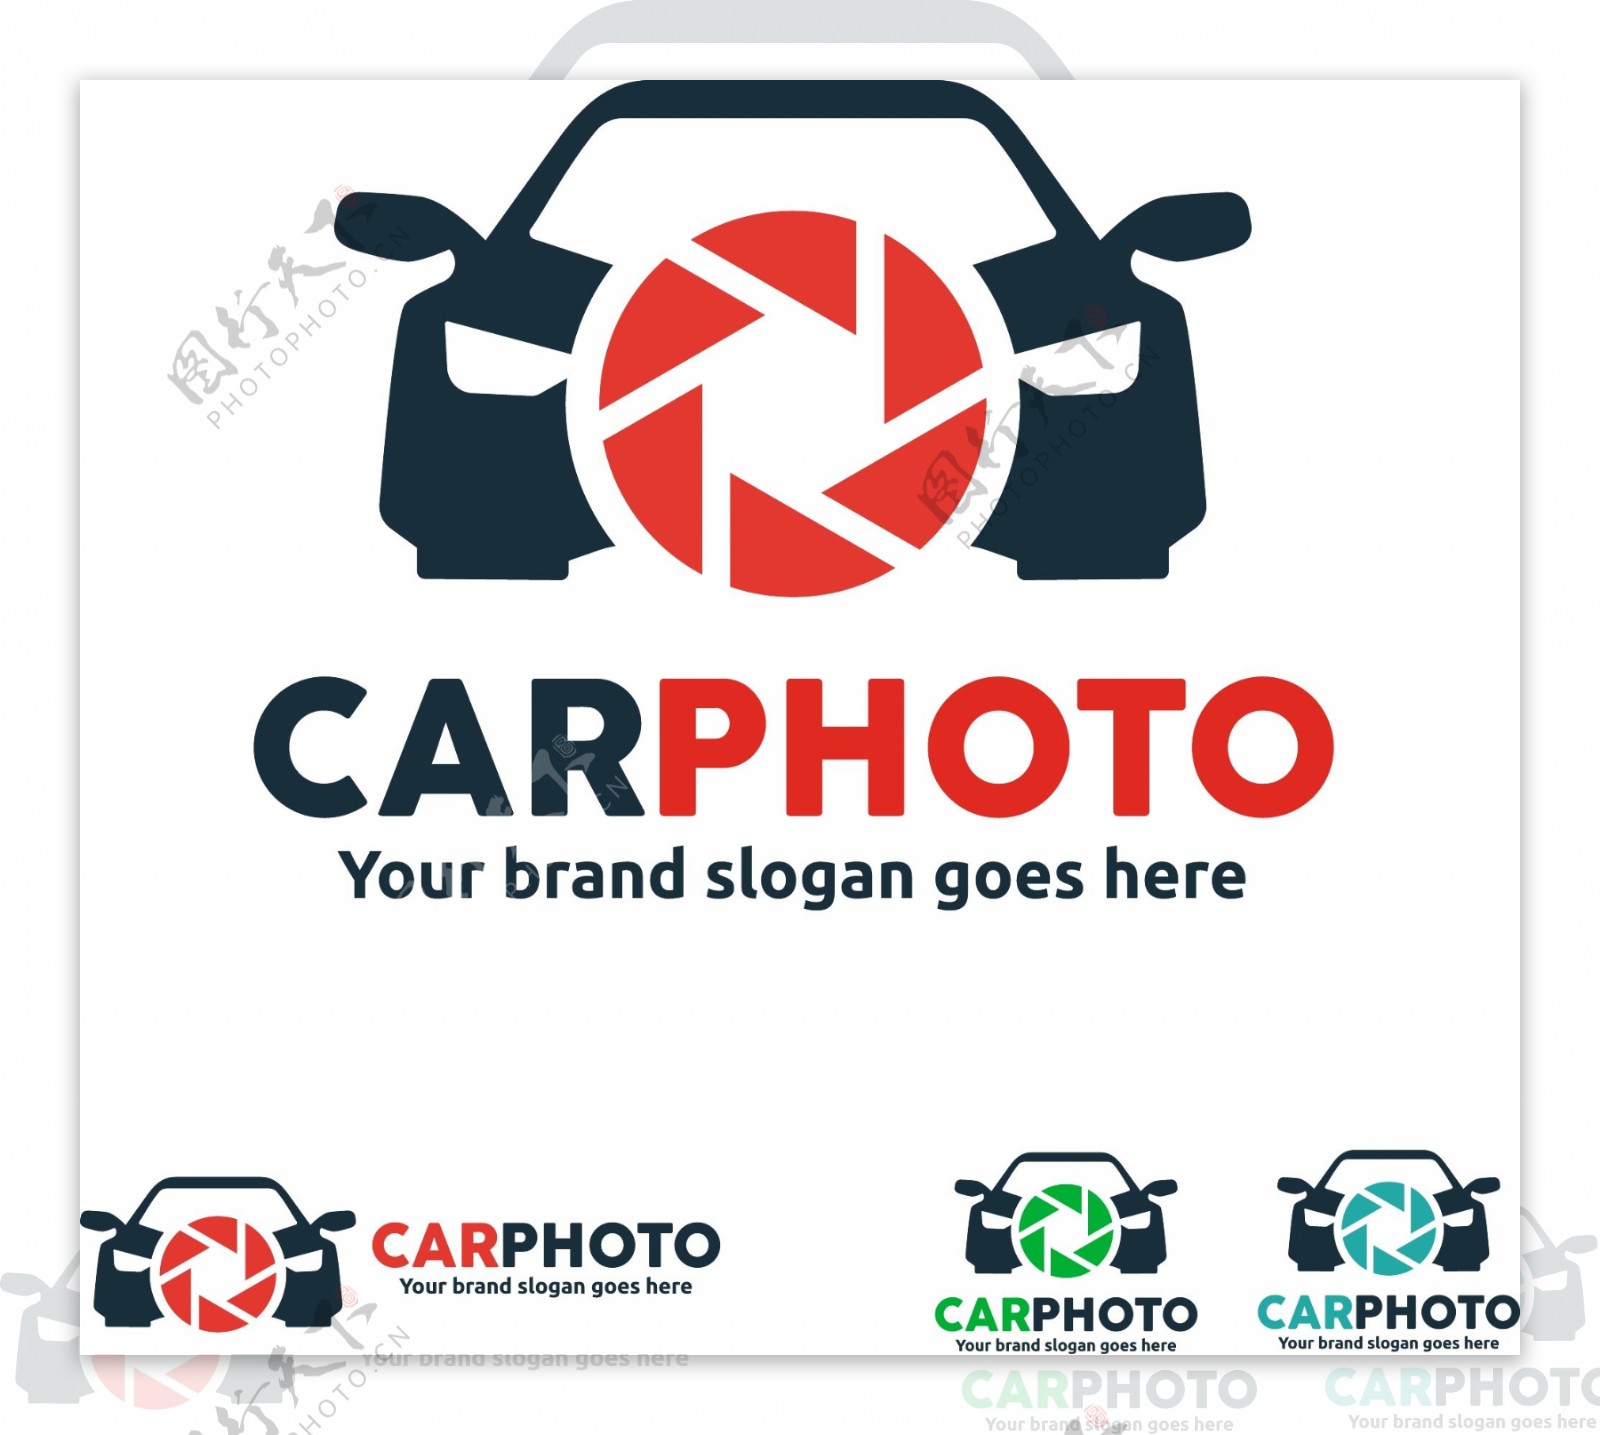 汽车摄影应用标志设计矢量素材下载